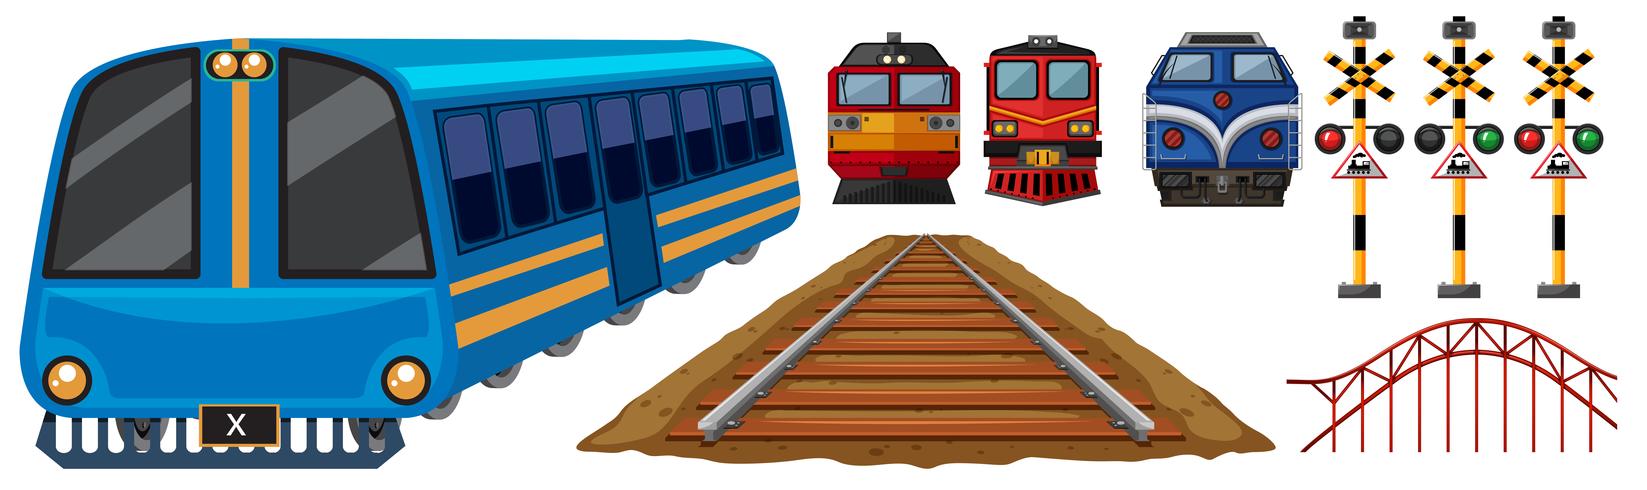 Eisenbahn und verschiedene Ausführungen von Zügen vektor